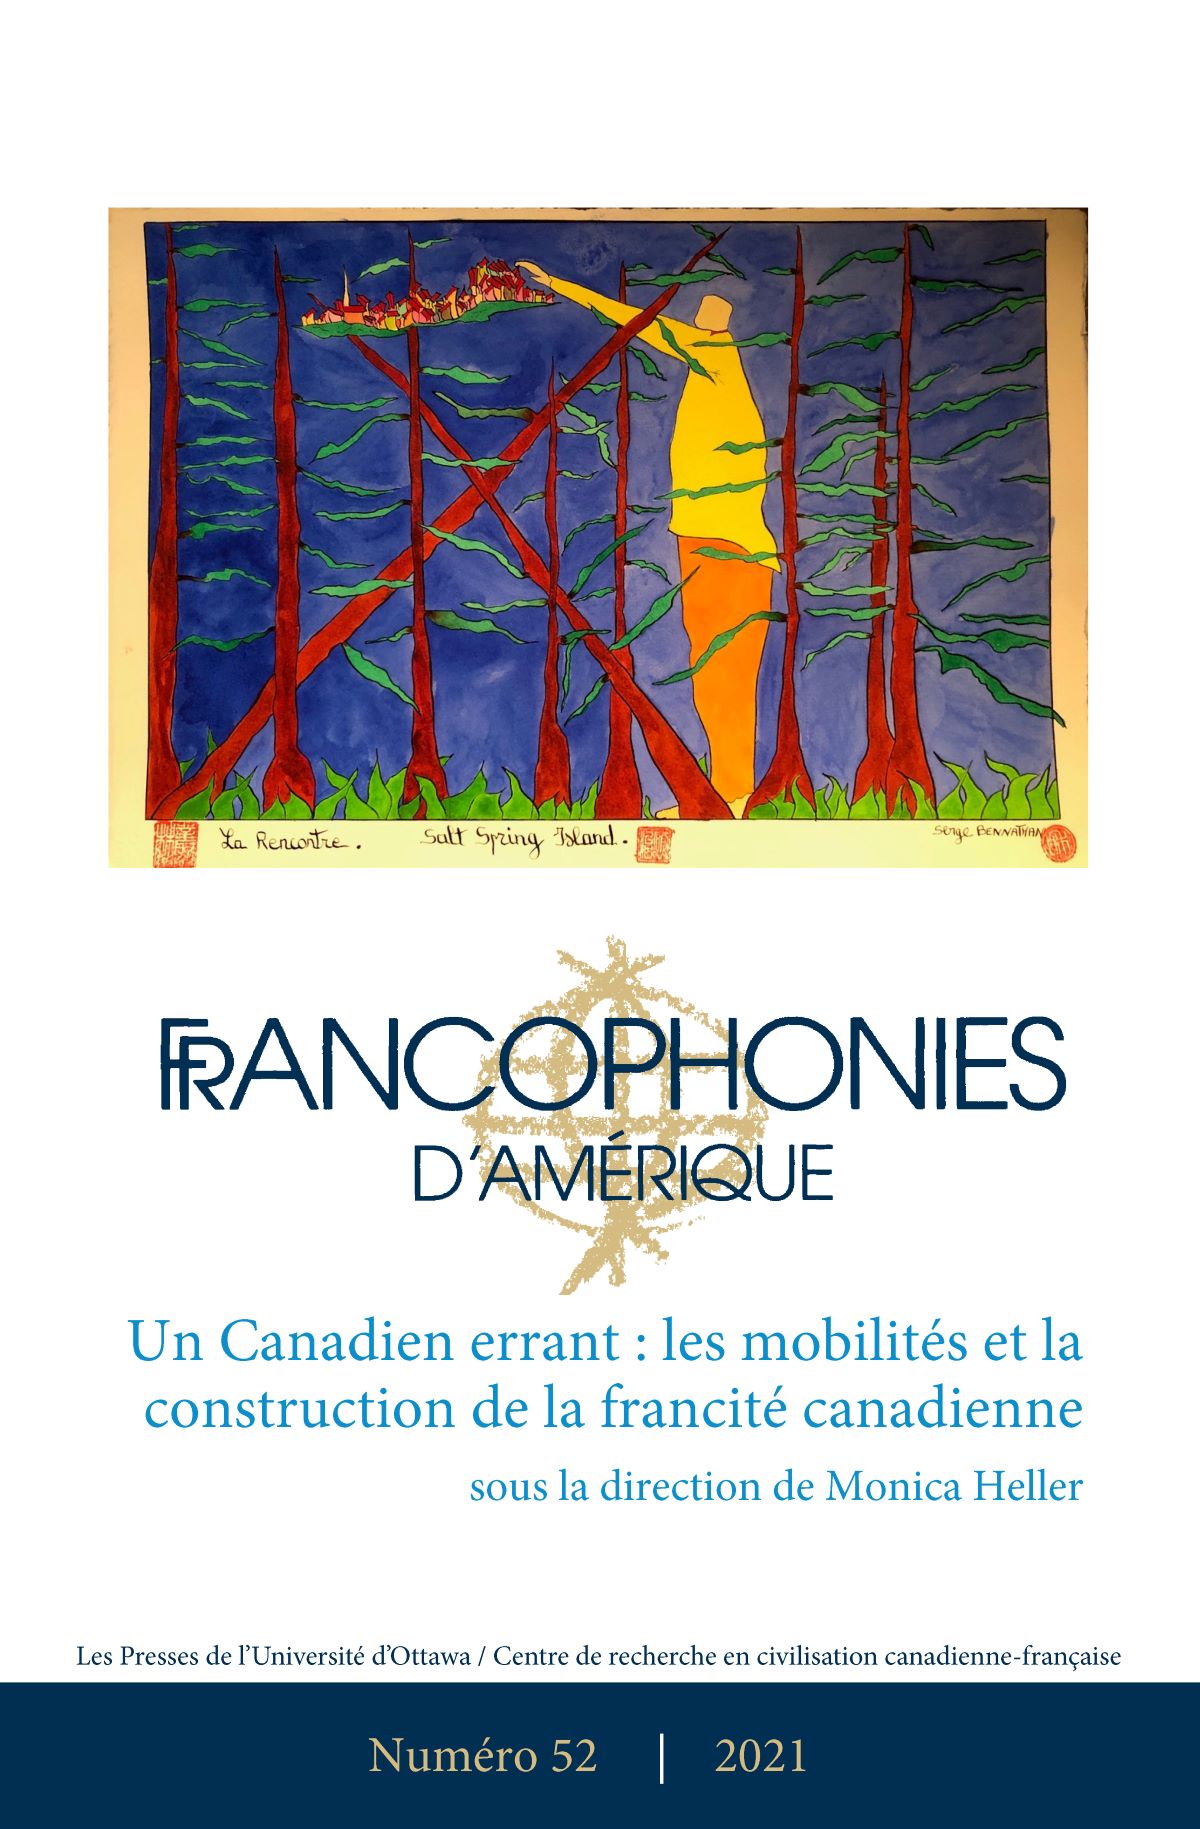 Couverture de la revue Francophonies d'Amérique (no 52)